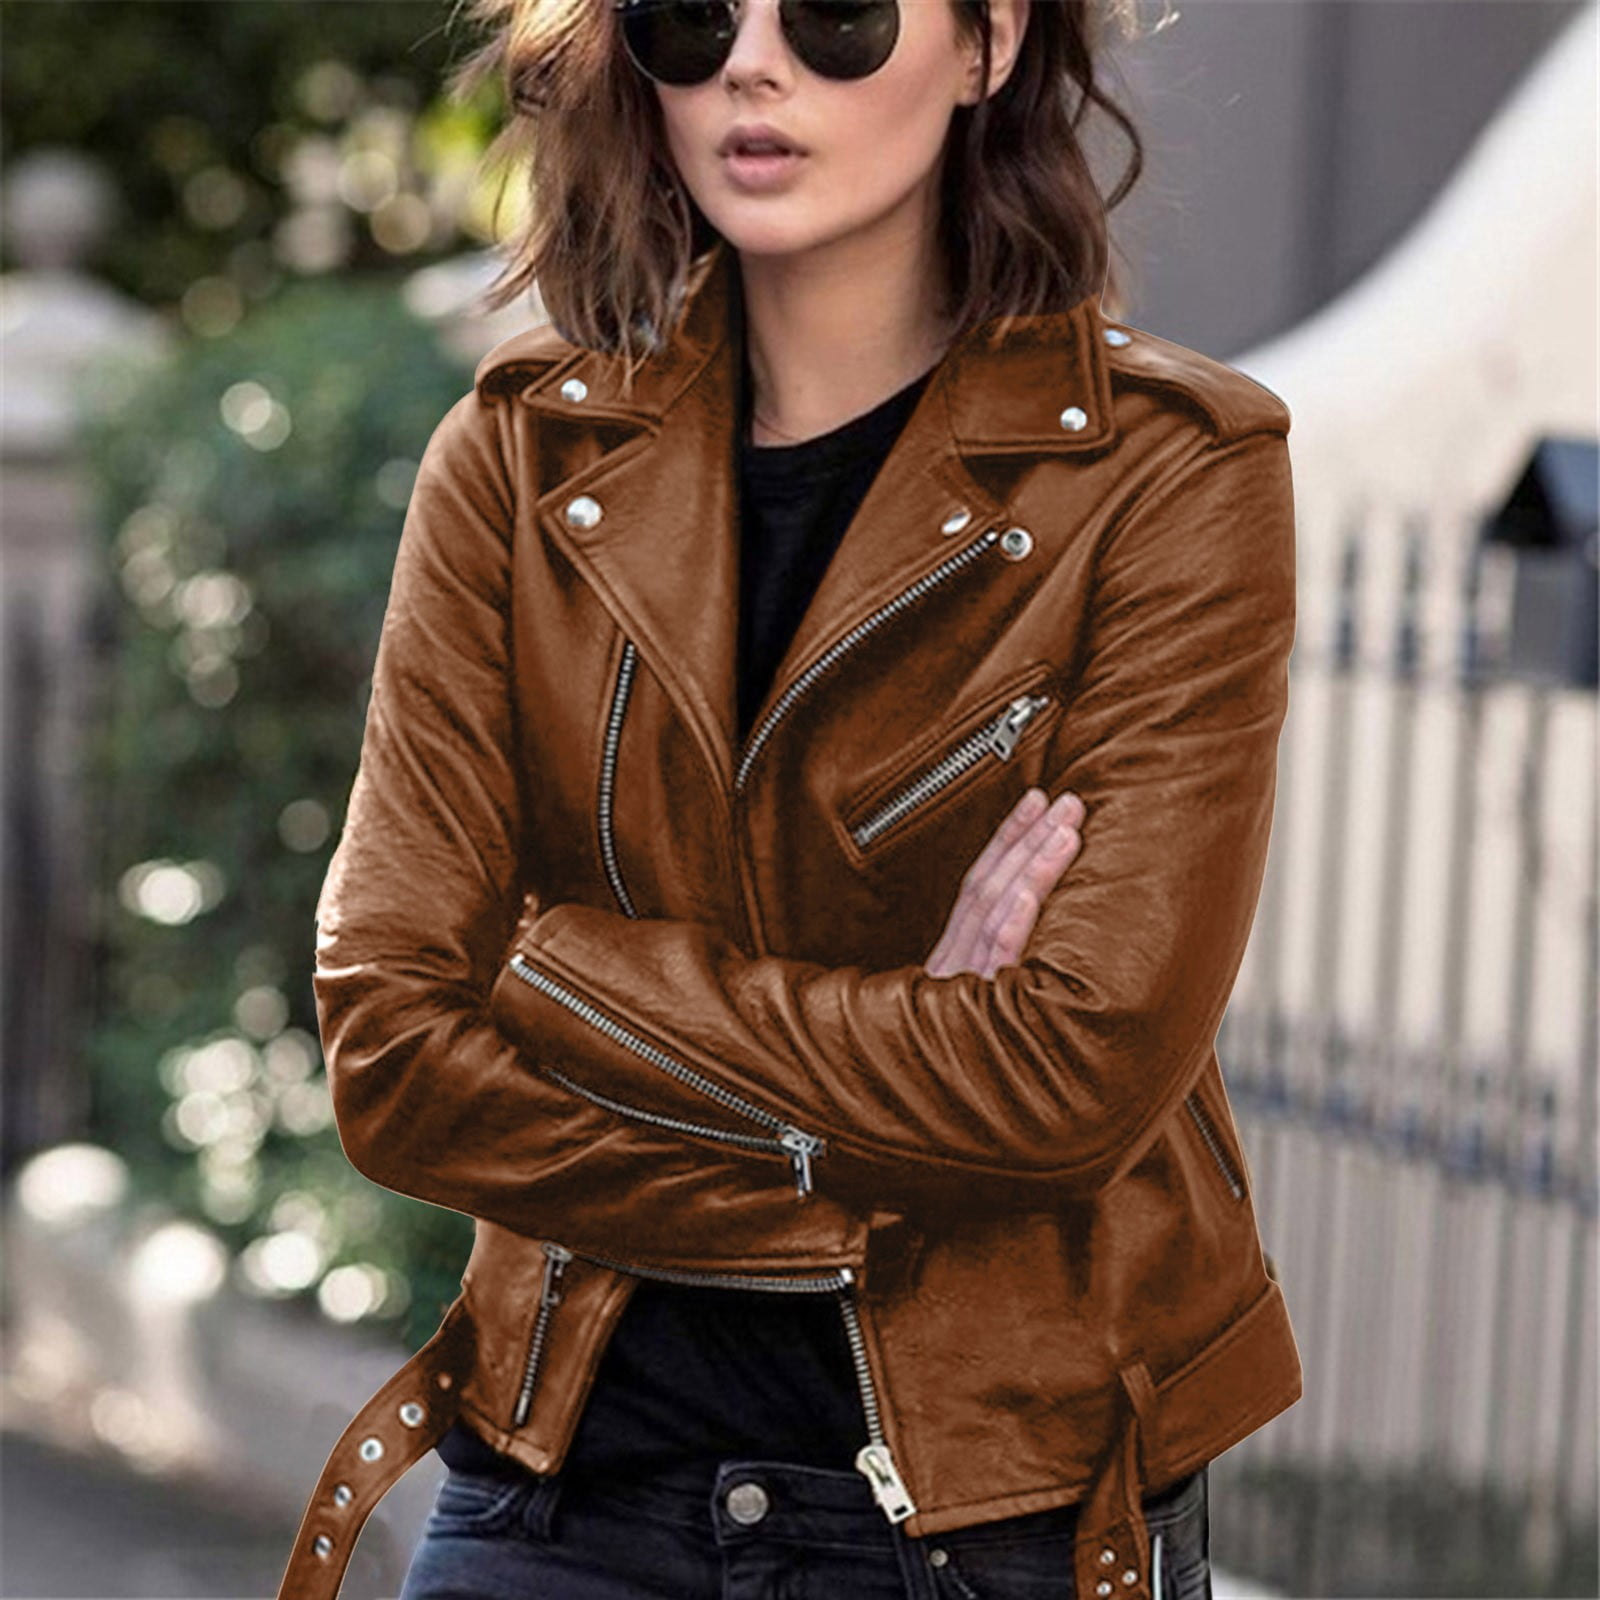 Zpanxa Jackets for Women Women Cool Faux Leather Jacket Long